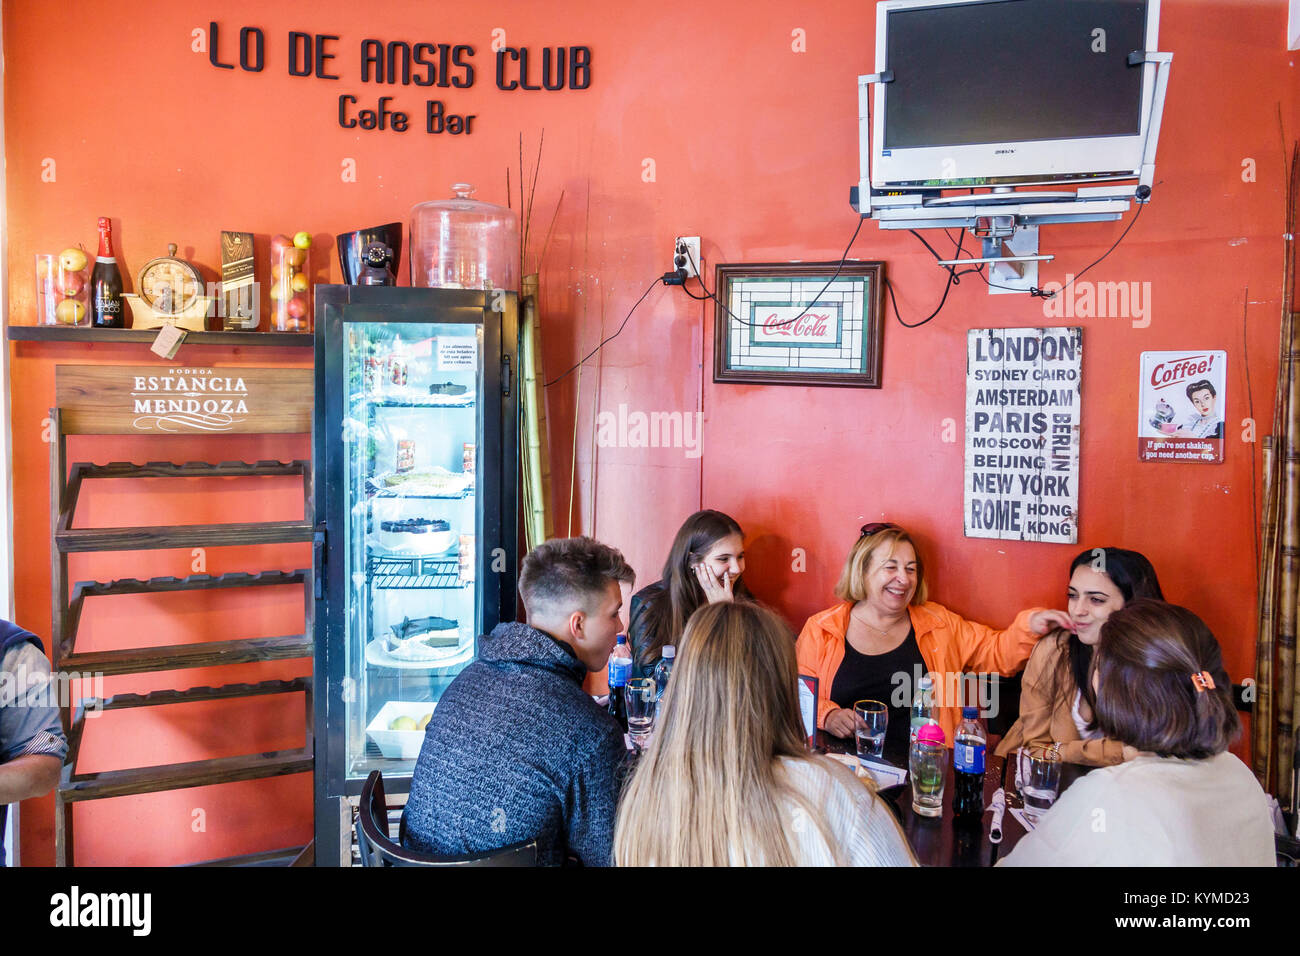 Buenos Aires Argentina, Palermo, lo De Ansis Club Cafe Bar, interno, ristorante ristoranti ristorazione mangiare fuori caffè caffè bistrot, adulti w Foto Stock